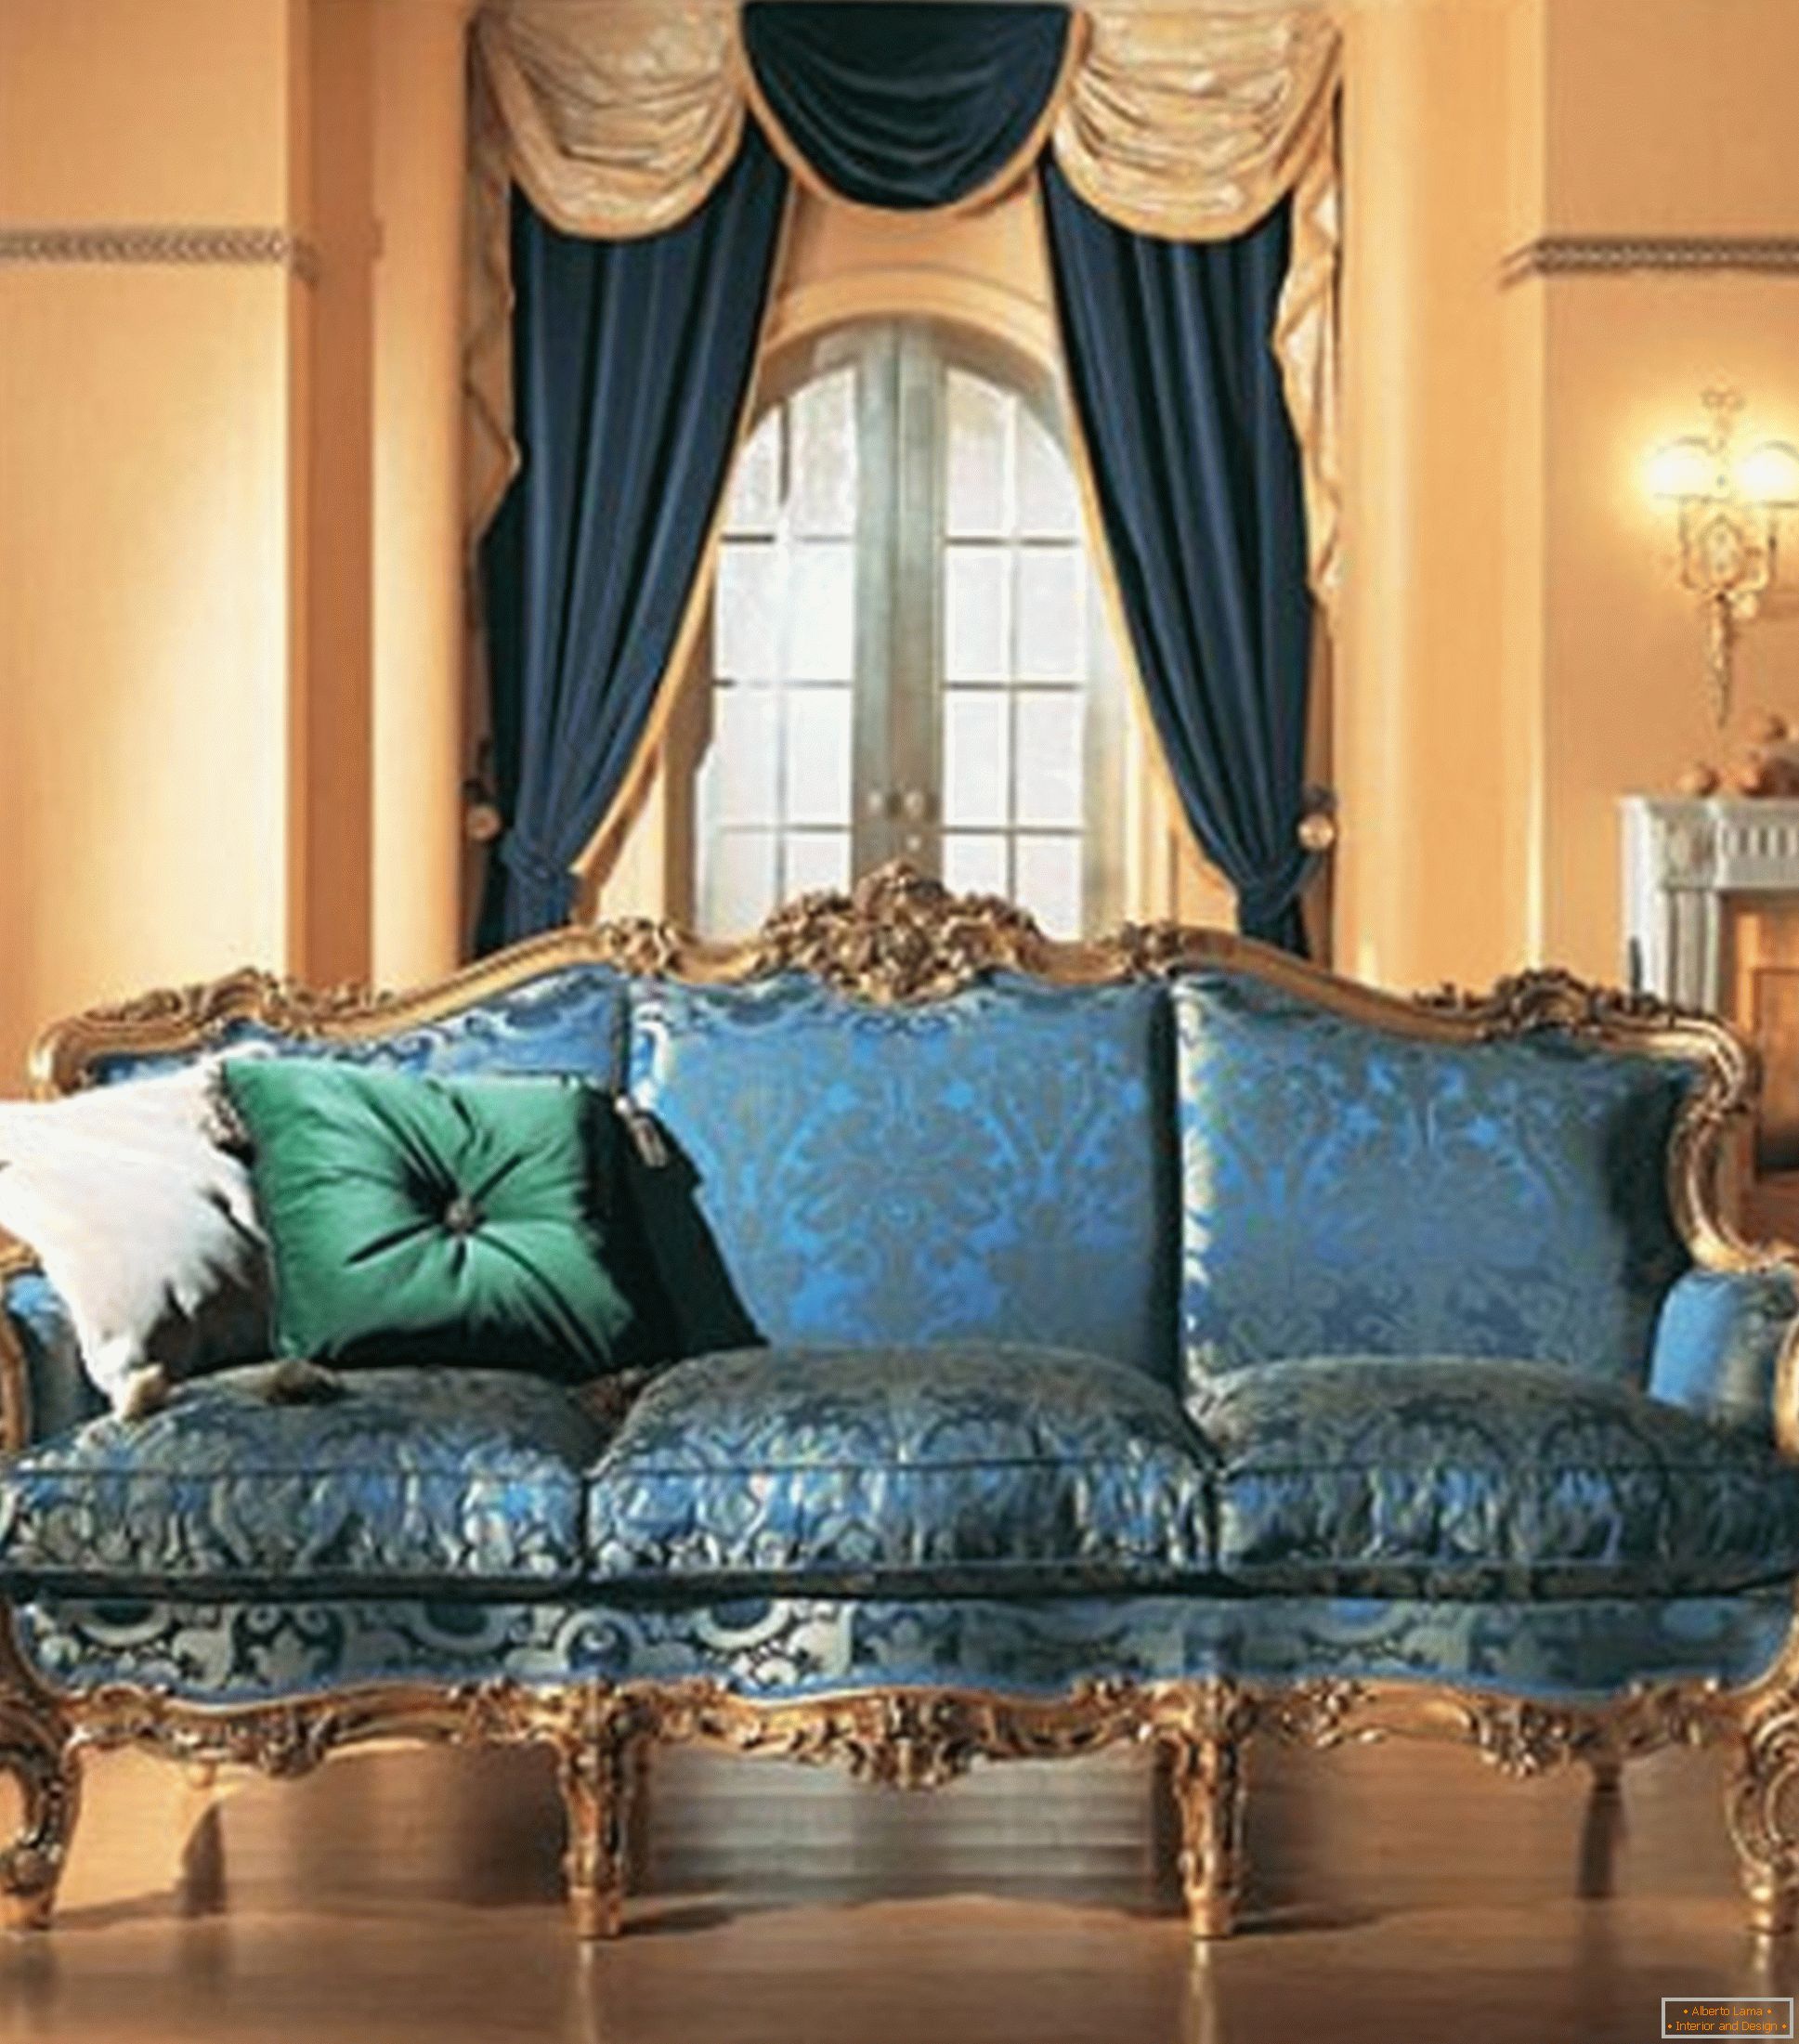 Kombinace kontrastních barev v dekoraci obývacího pokoje v barokním stylu.